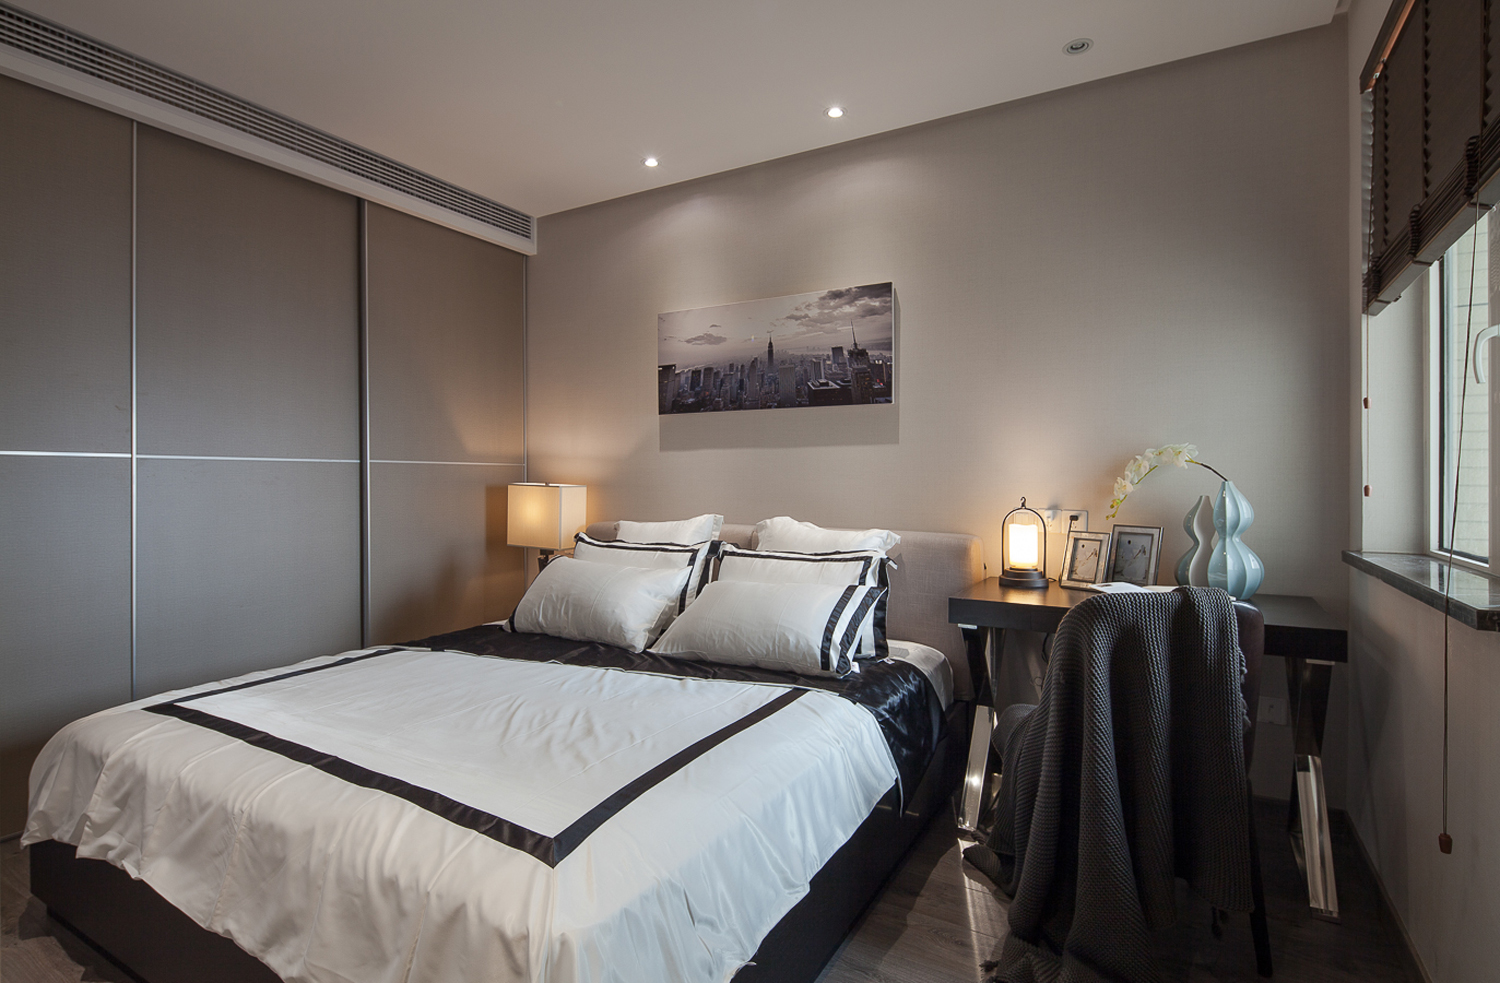 卧室-造型简单功能强大是现代简约风格的核心点